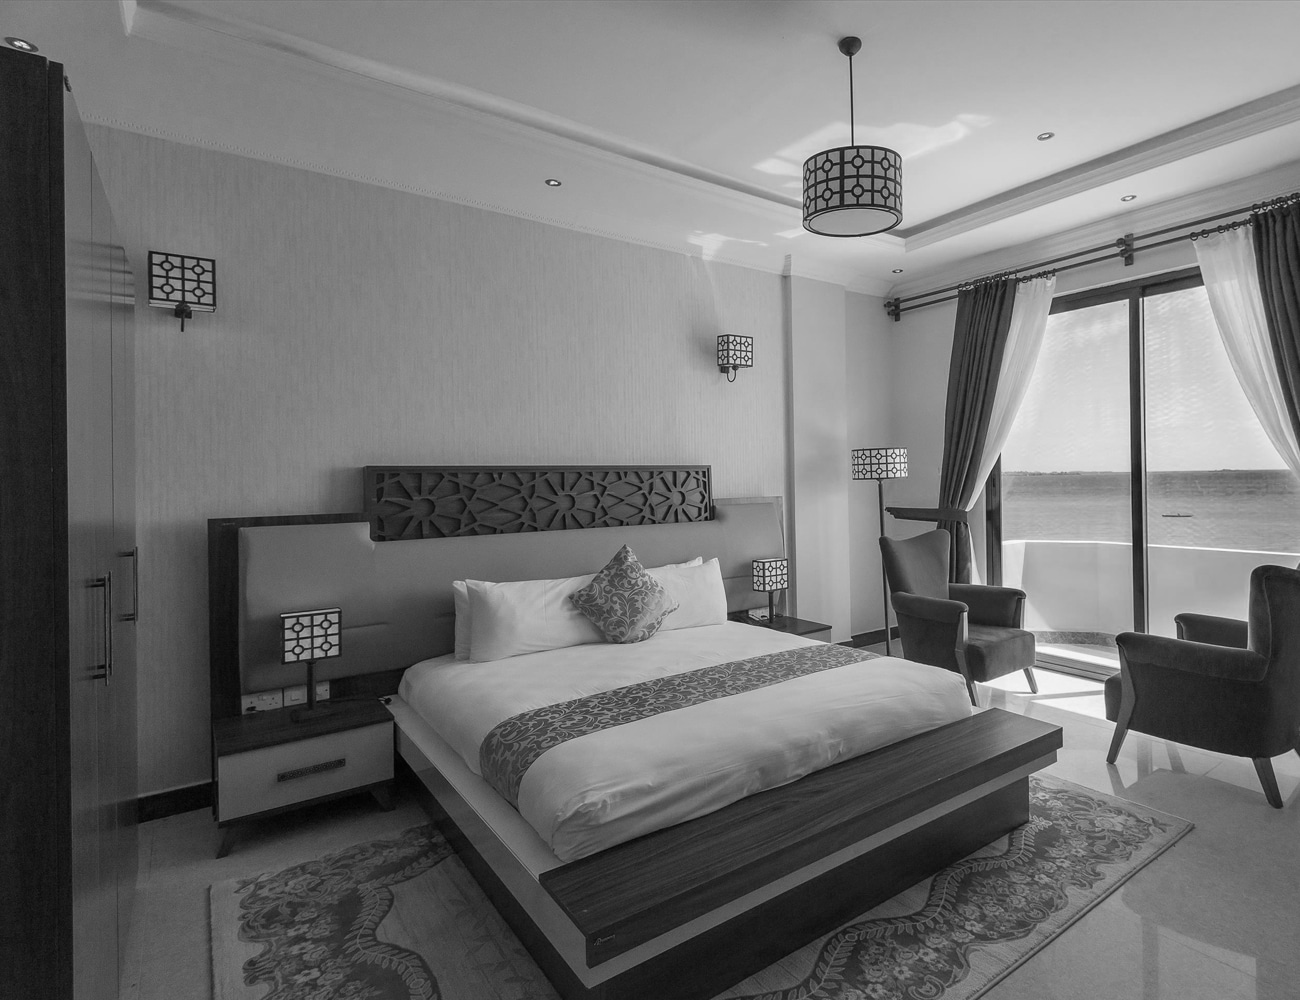 Bedrooms at Golden Tulip Resort